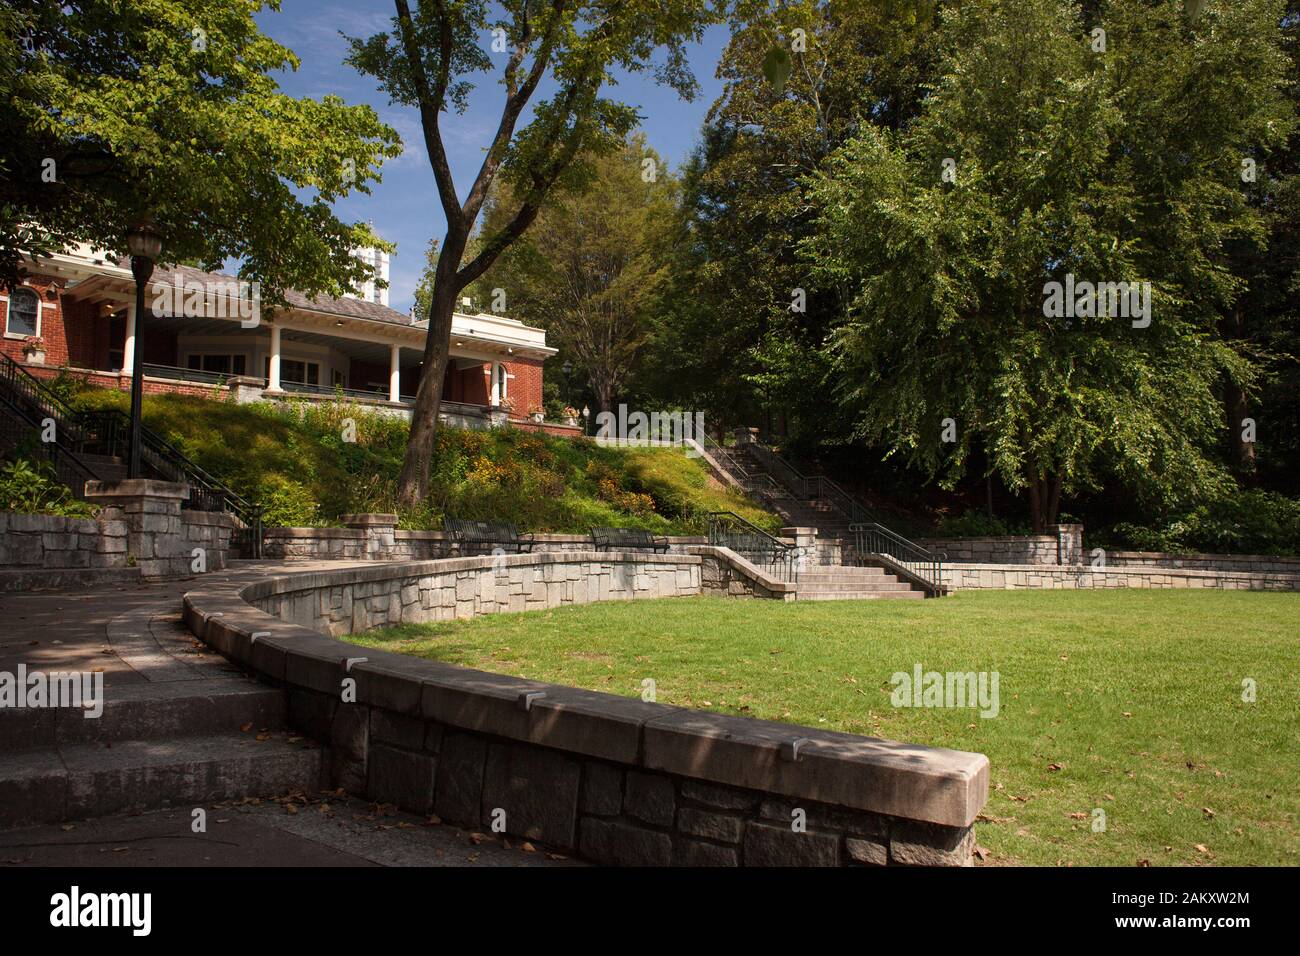 Horizontal shot of the Piedmont Park in Midtown Atlanta, Georgia, USA Stock Photo